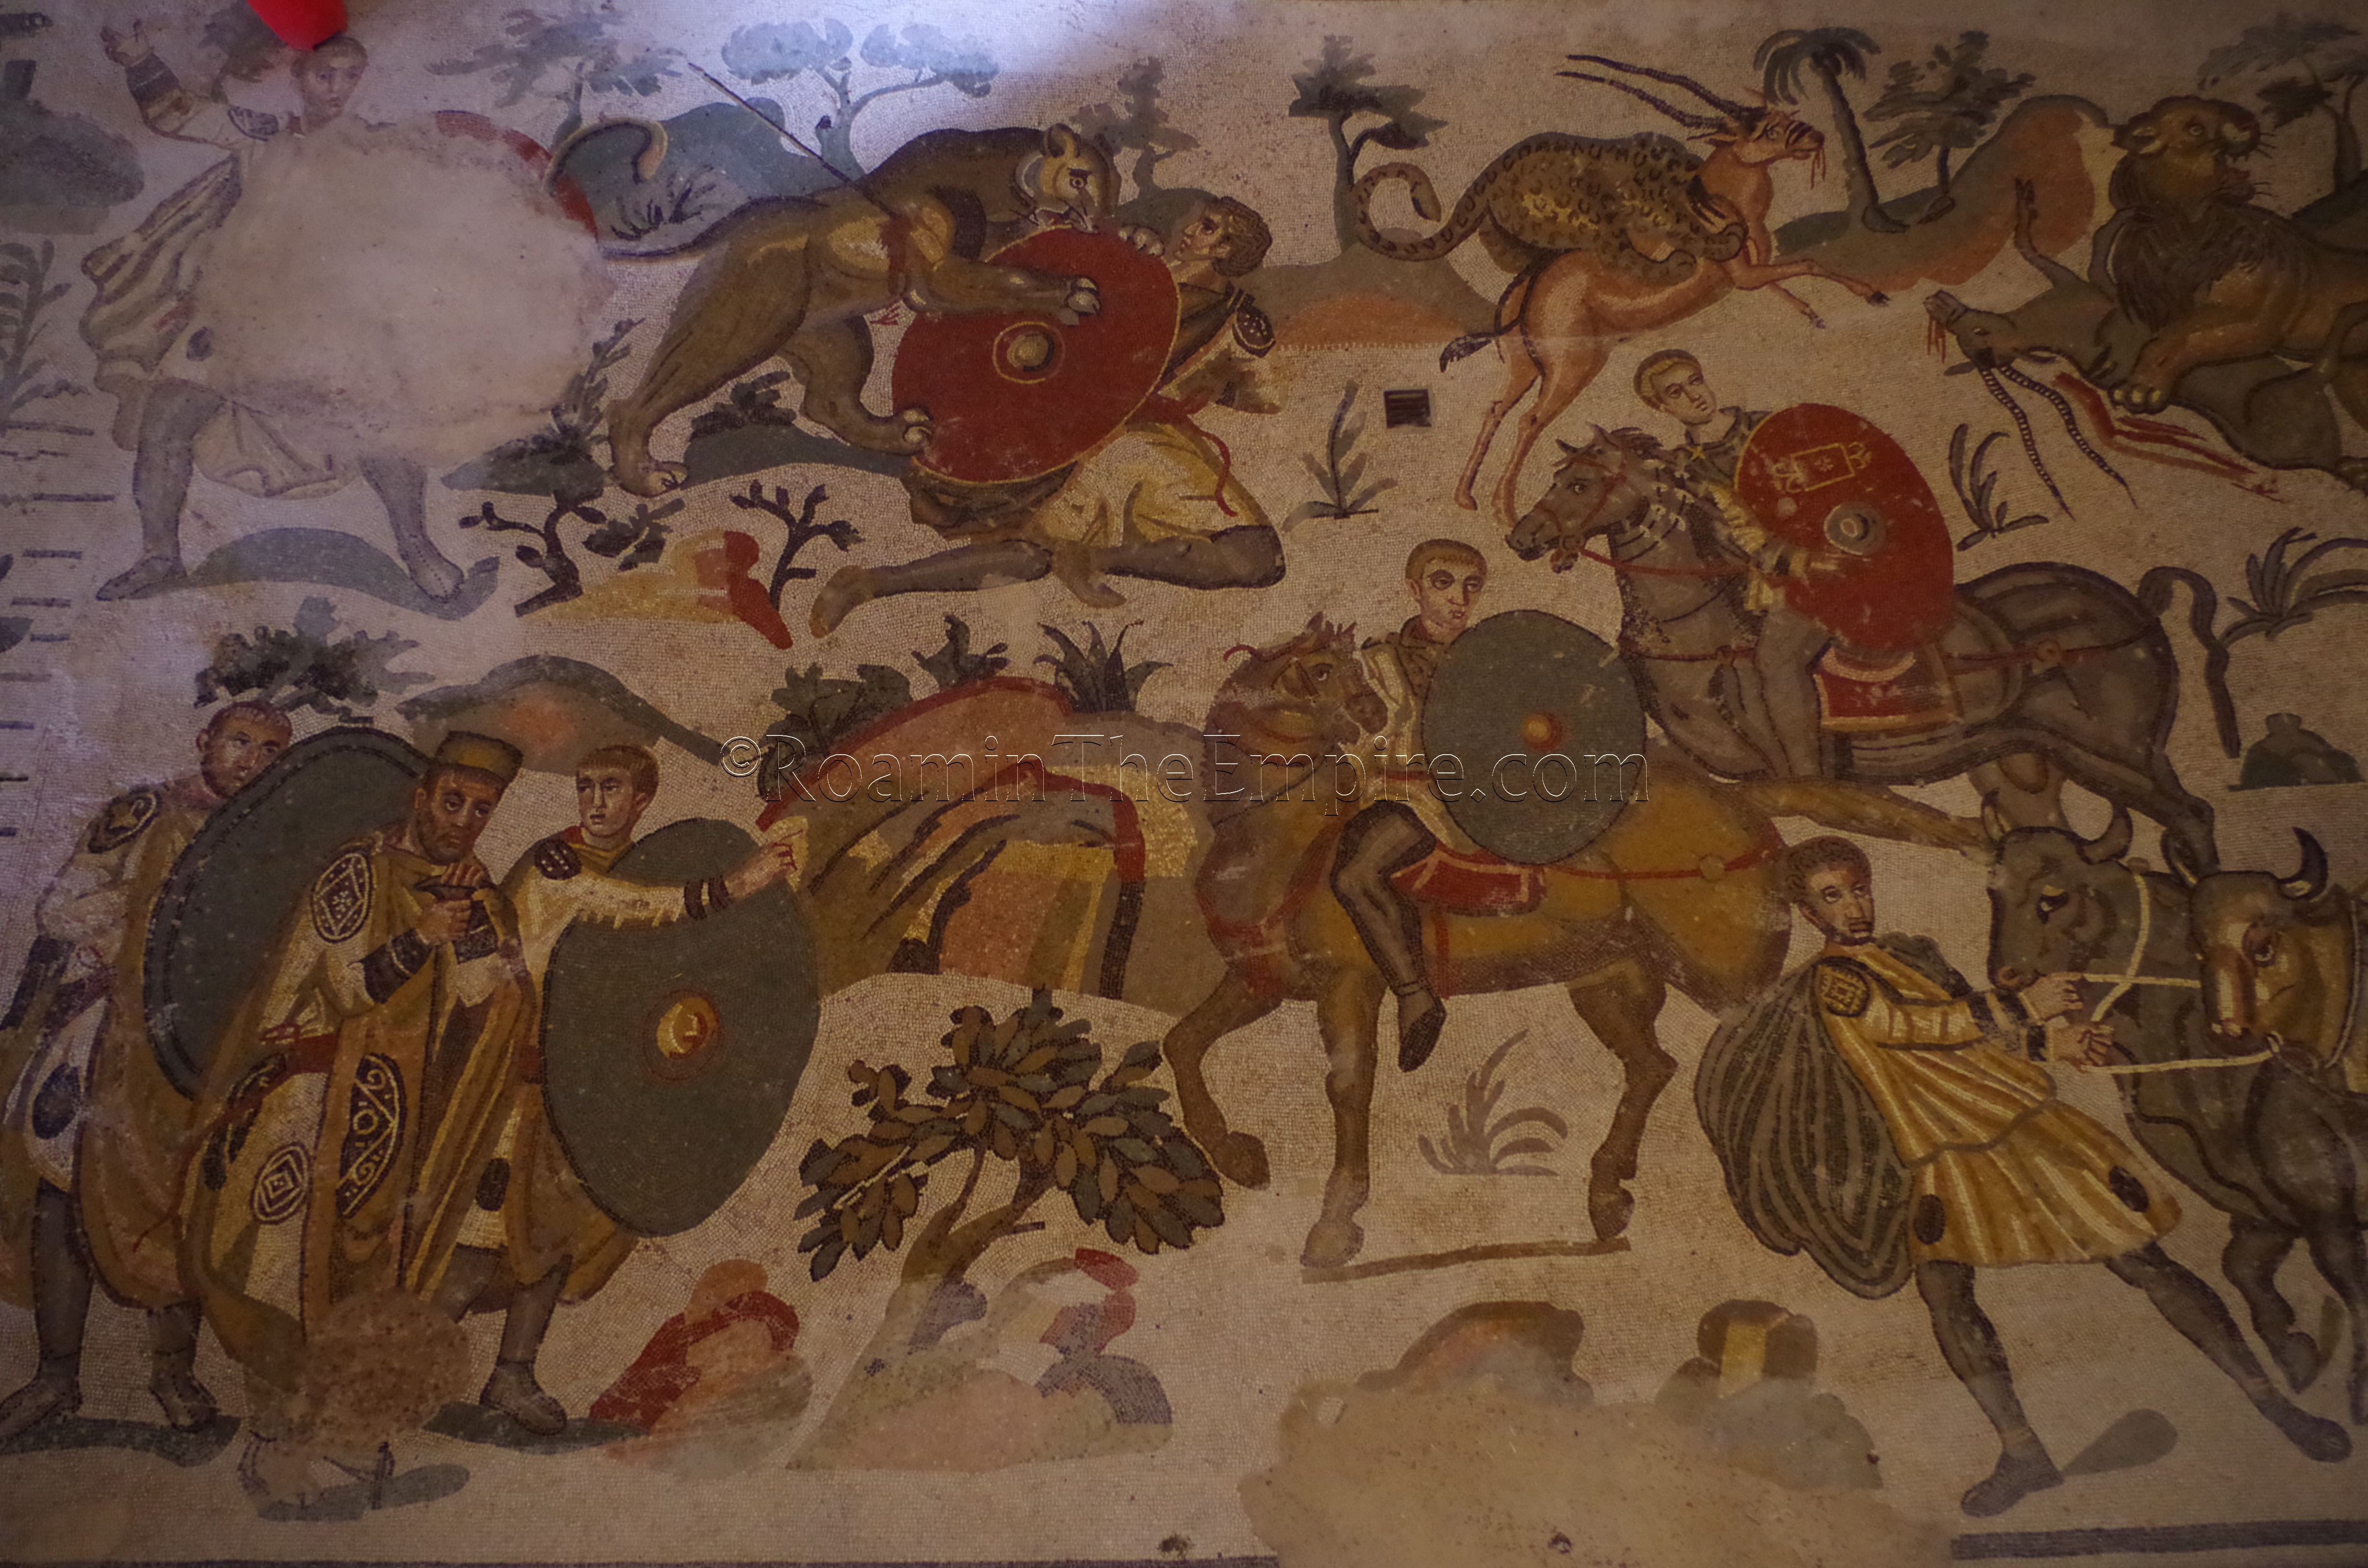 Mosaic from the Villa Romana del Casale. Sicily.